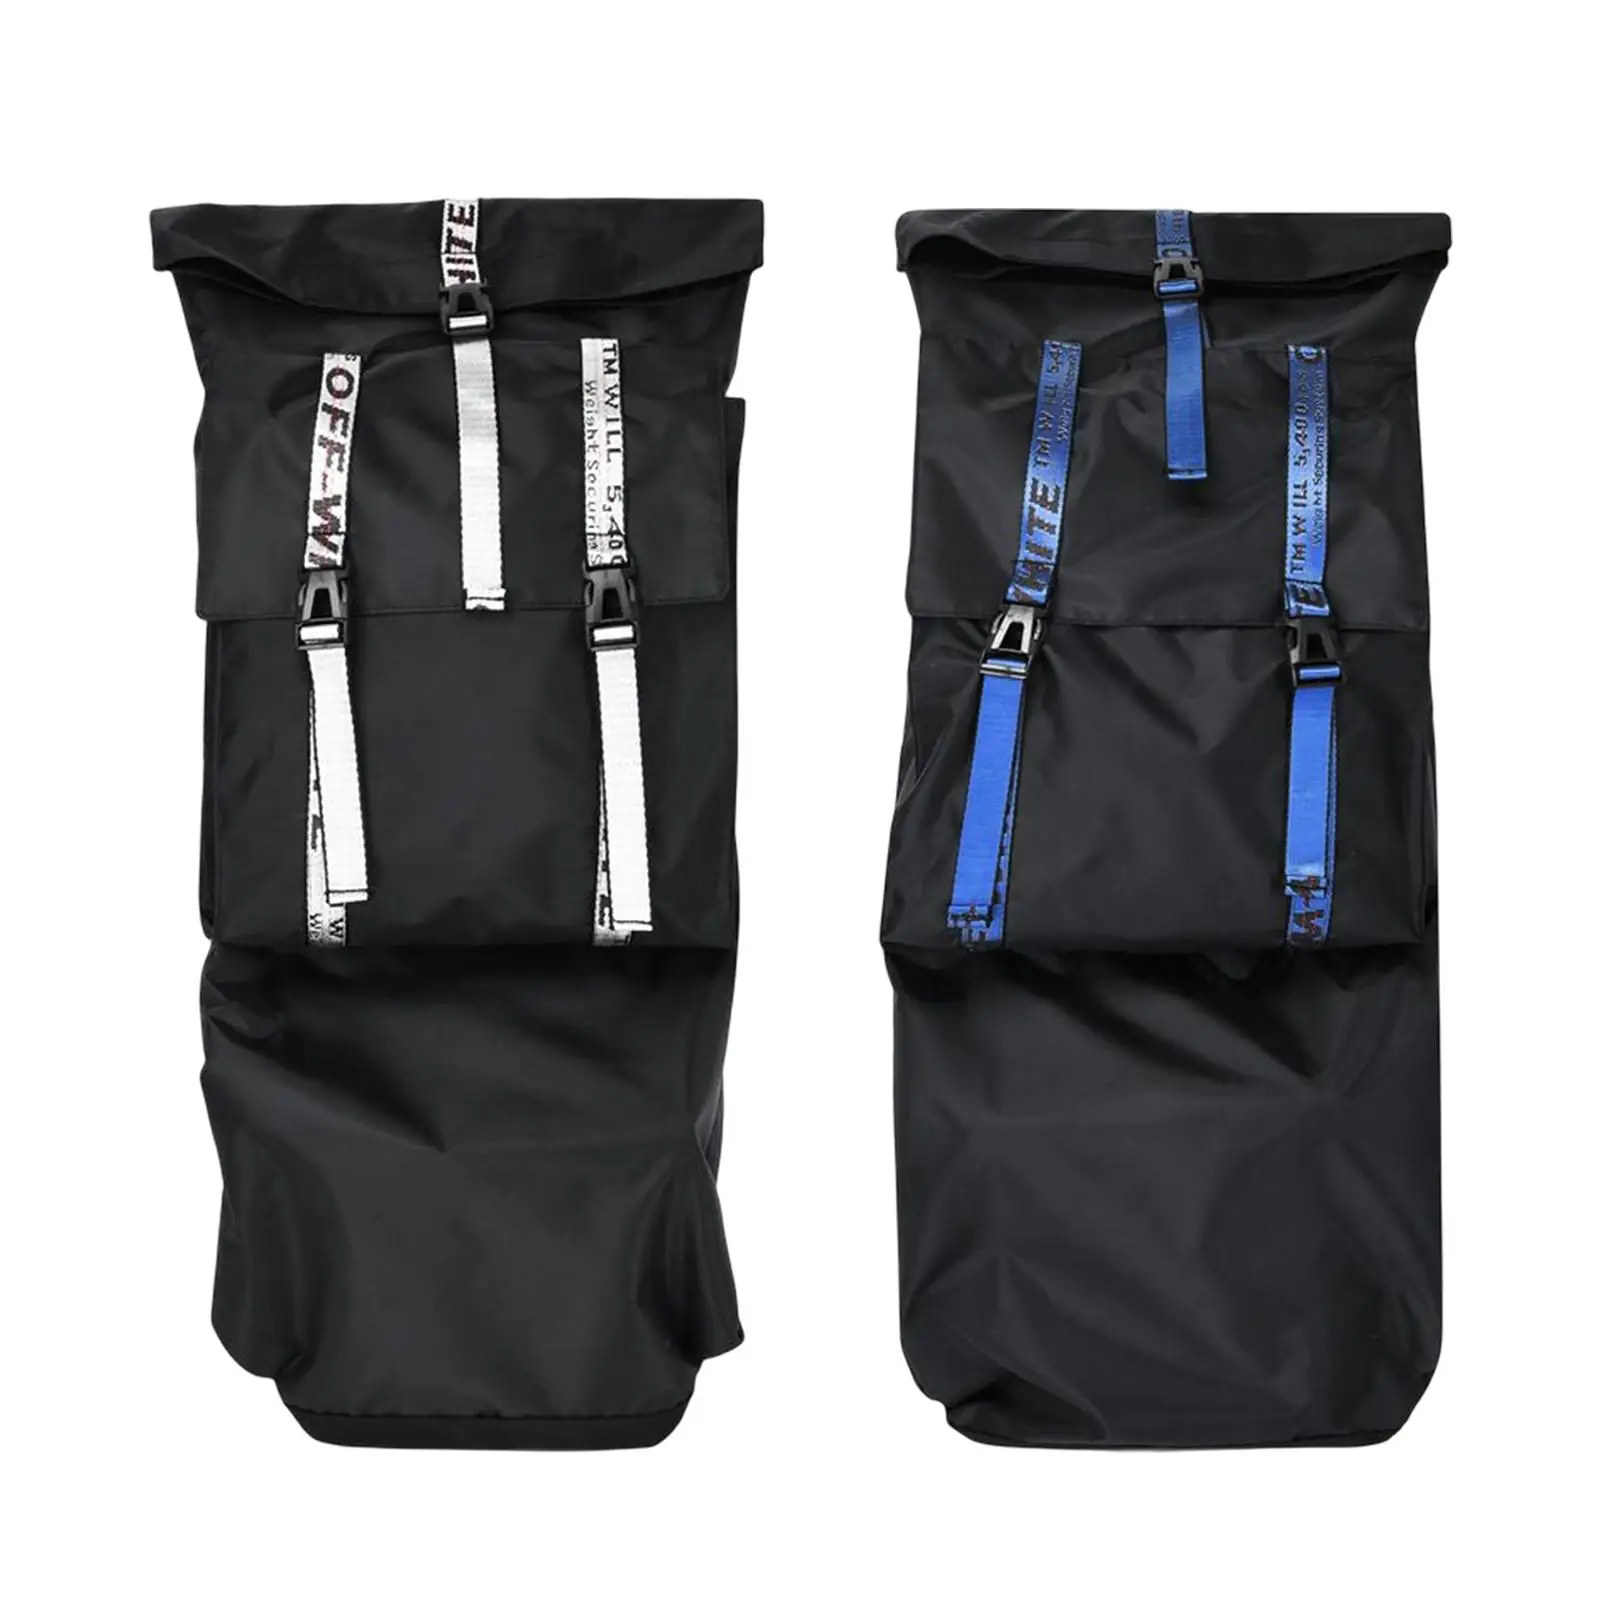 Skateboard Bag with Adjustable Shoulder Strap Surfboard Carrier Water Resistant Universal Skateboard Backpacks for Travel